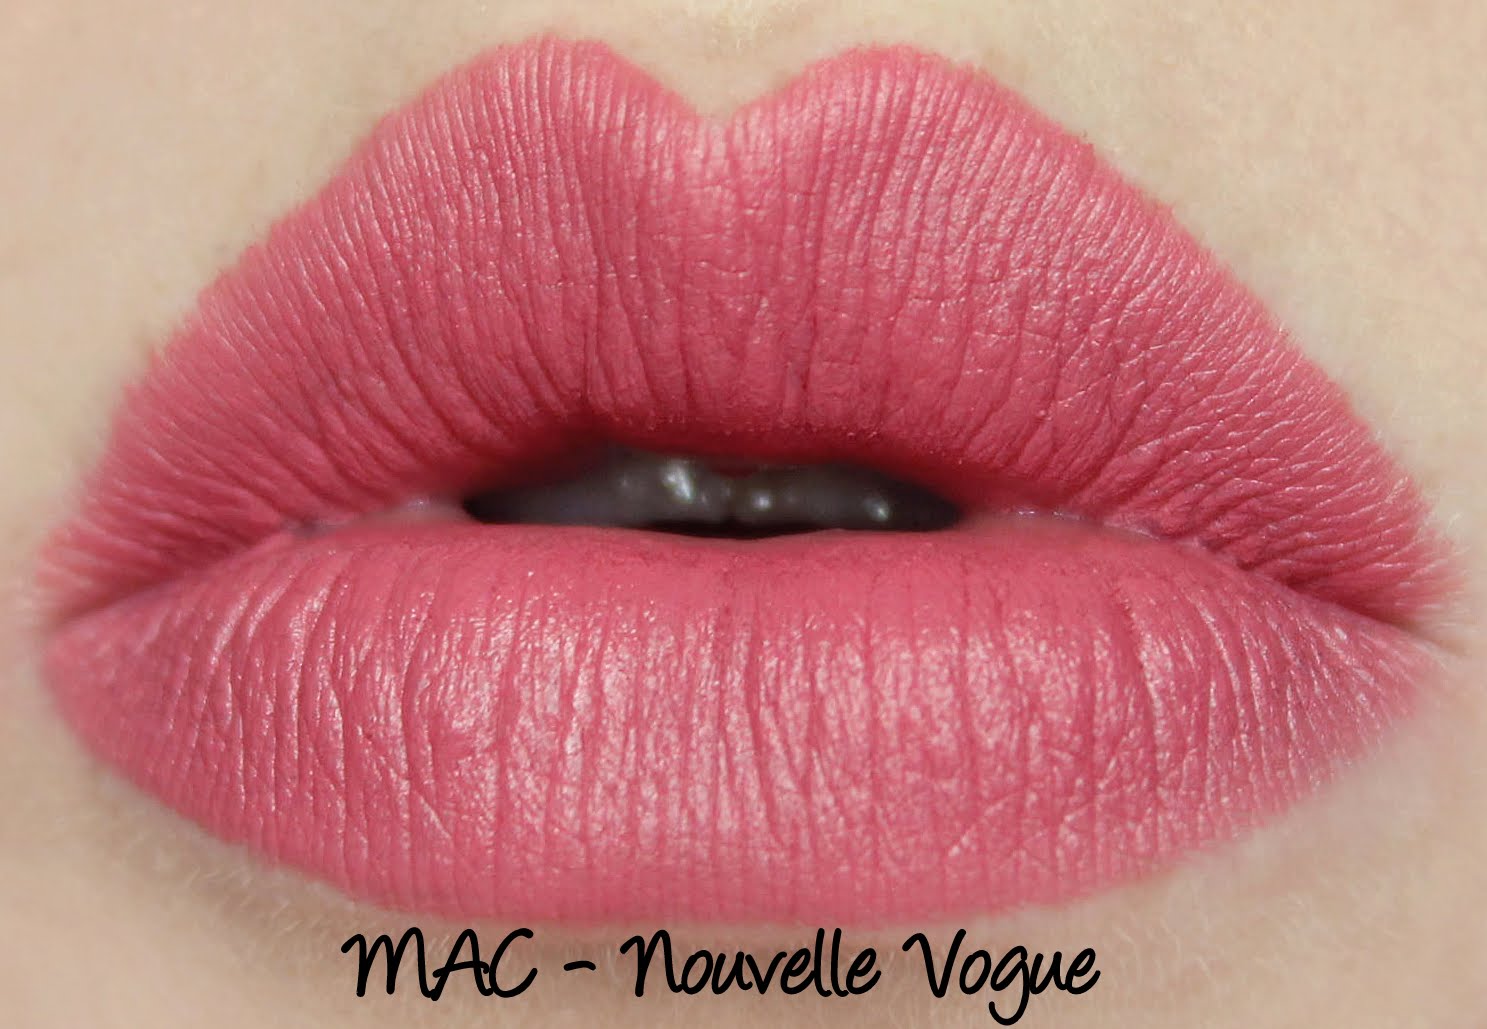 MAC - Nouvelle Vogue